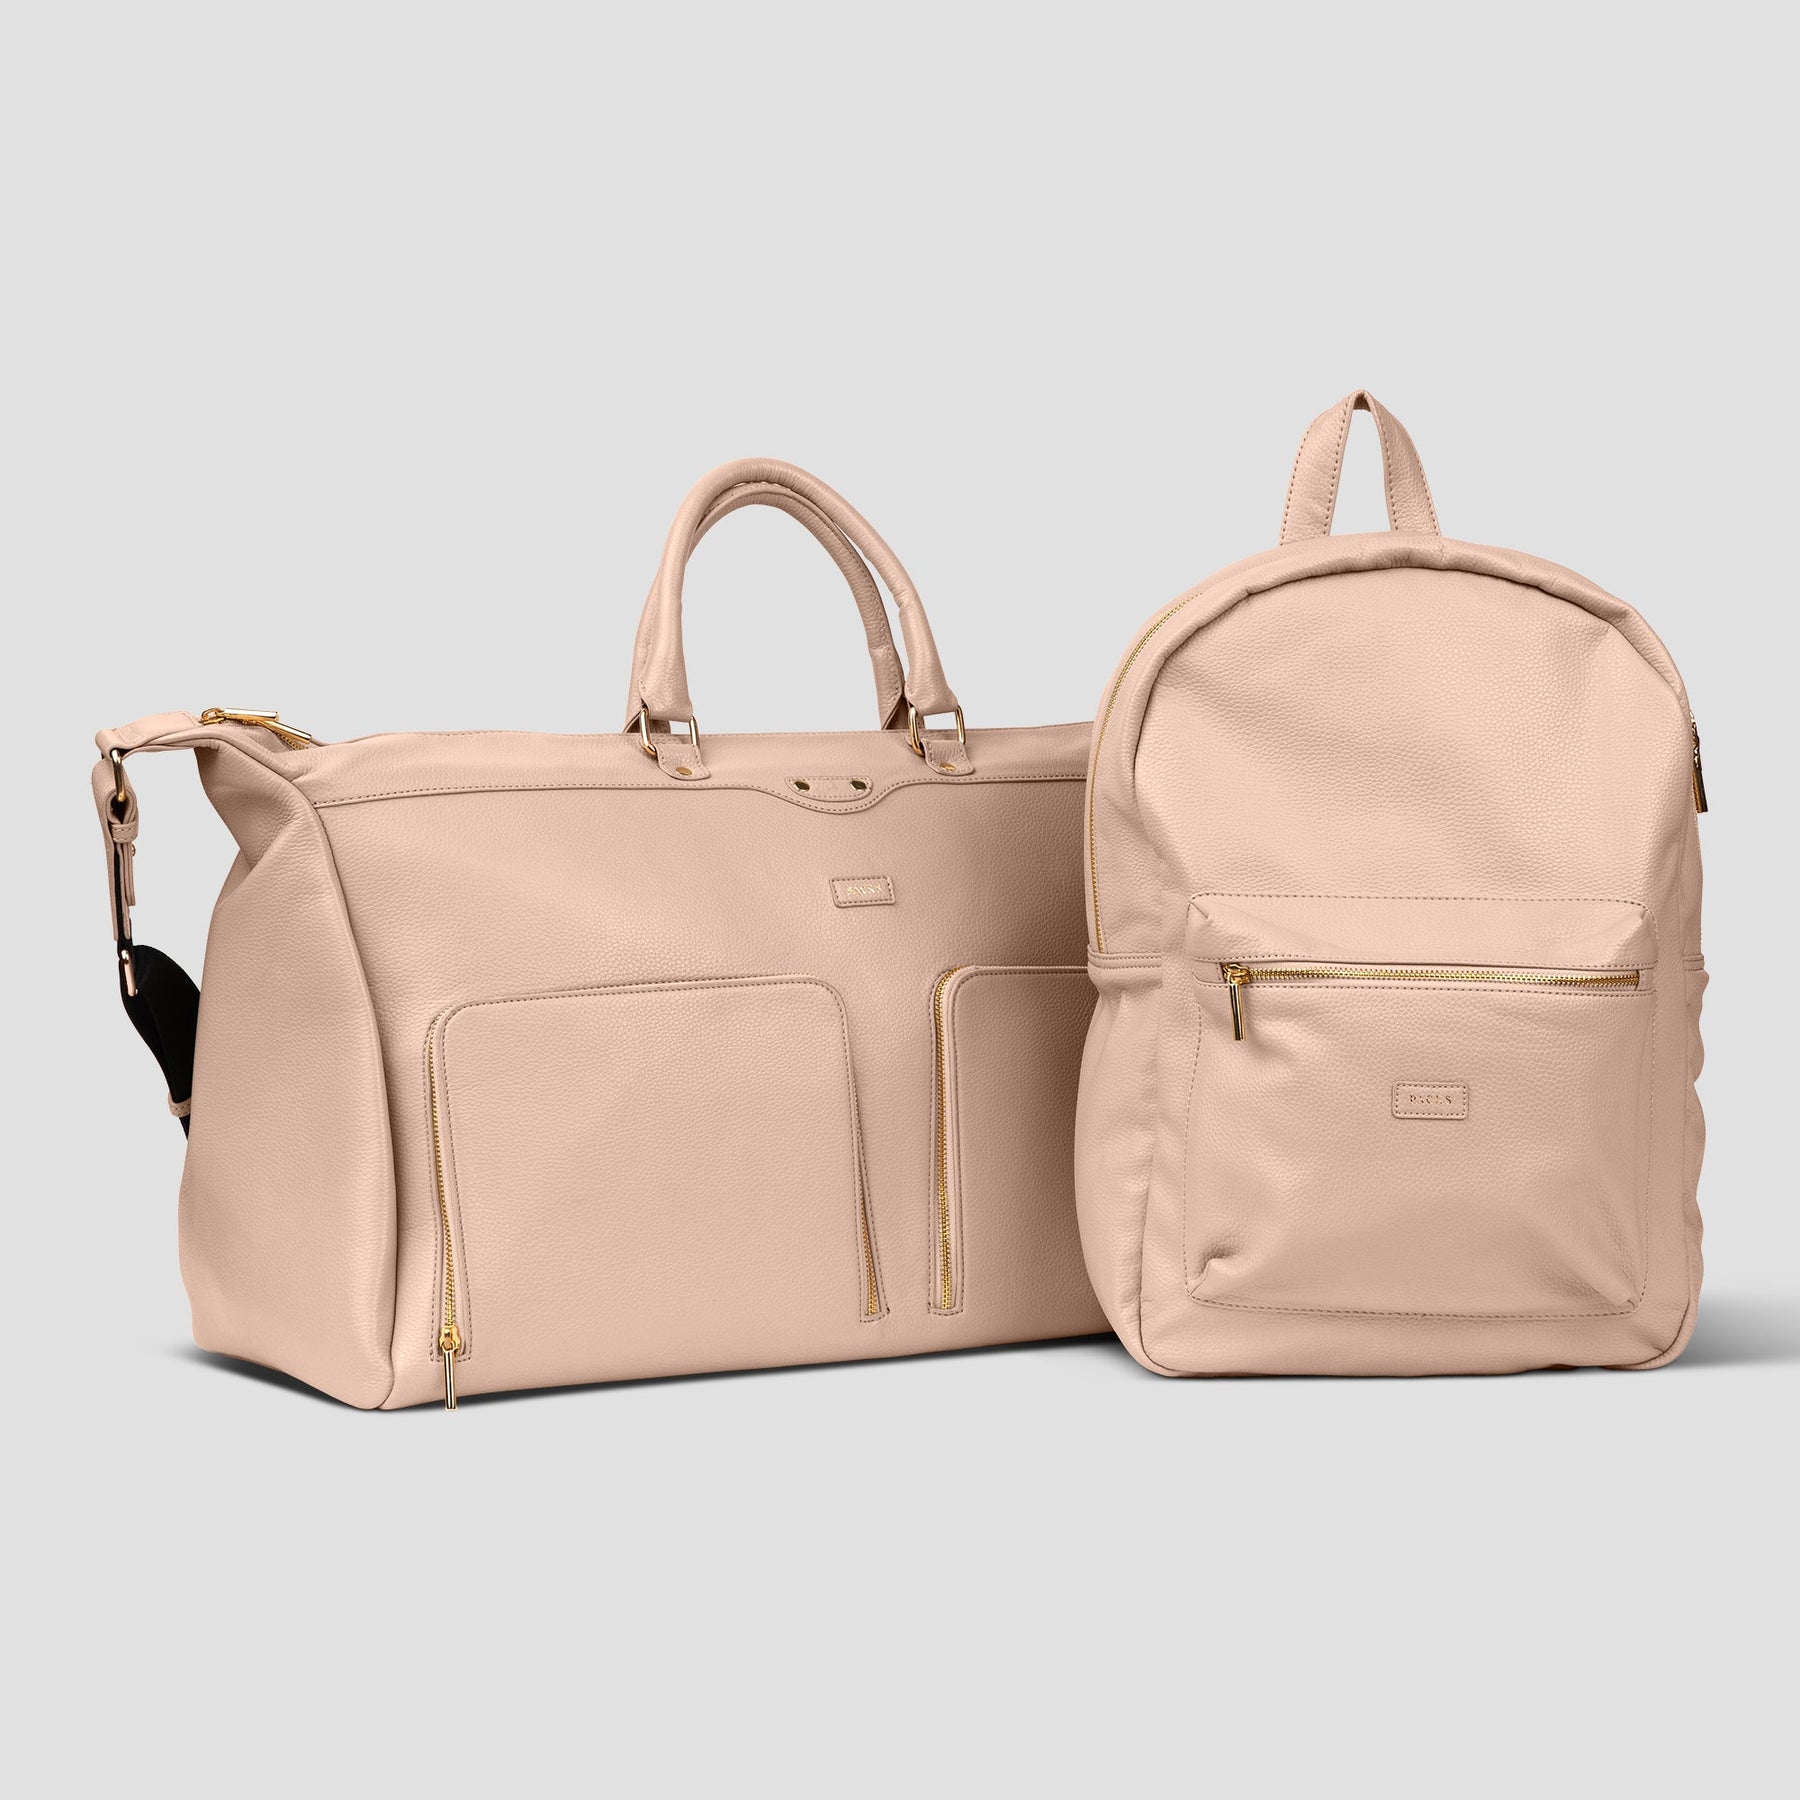 Tribeca Bag Set (Bundle) – Packs